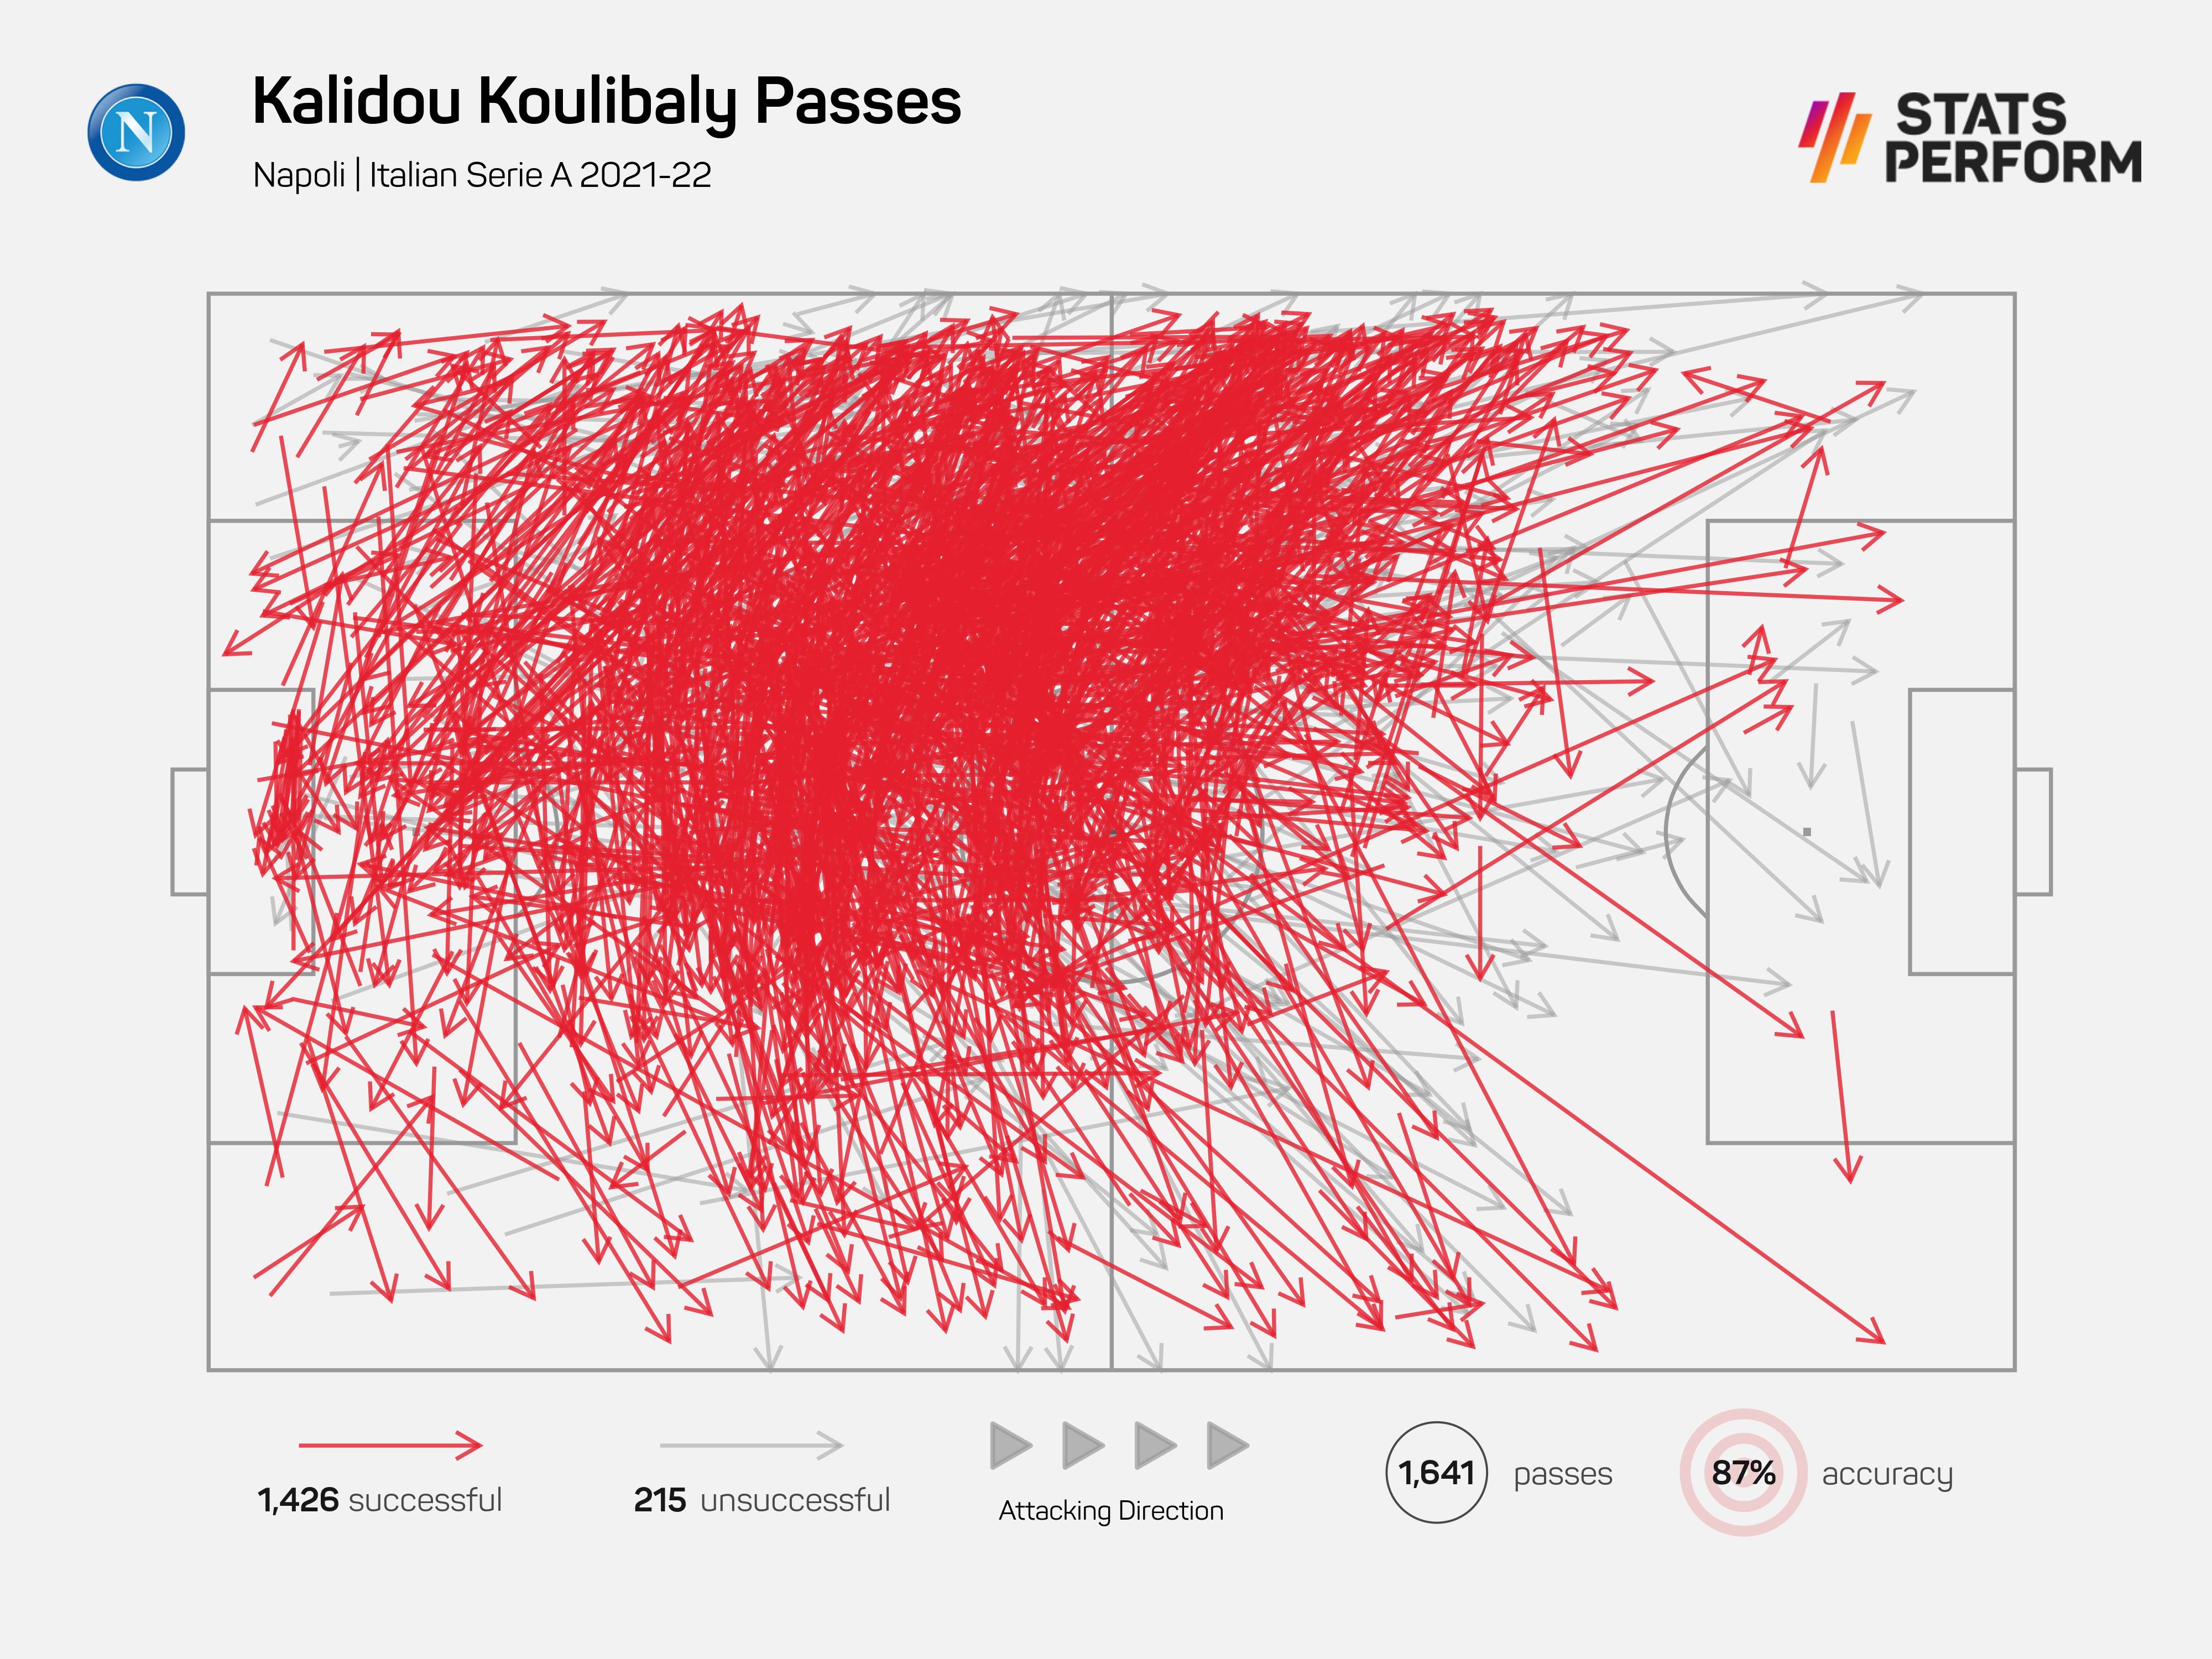 Kalidou Koulibaly led the way for passes among Napoli players